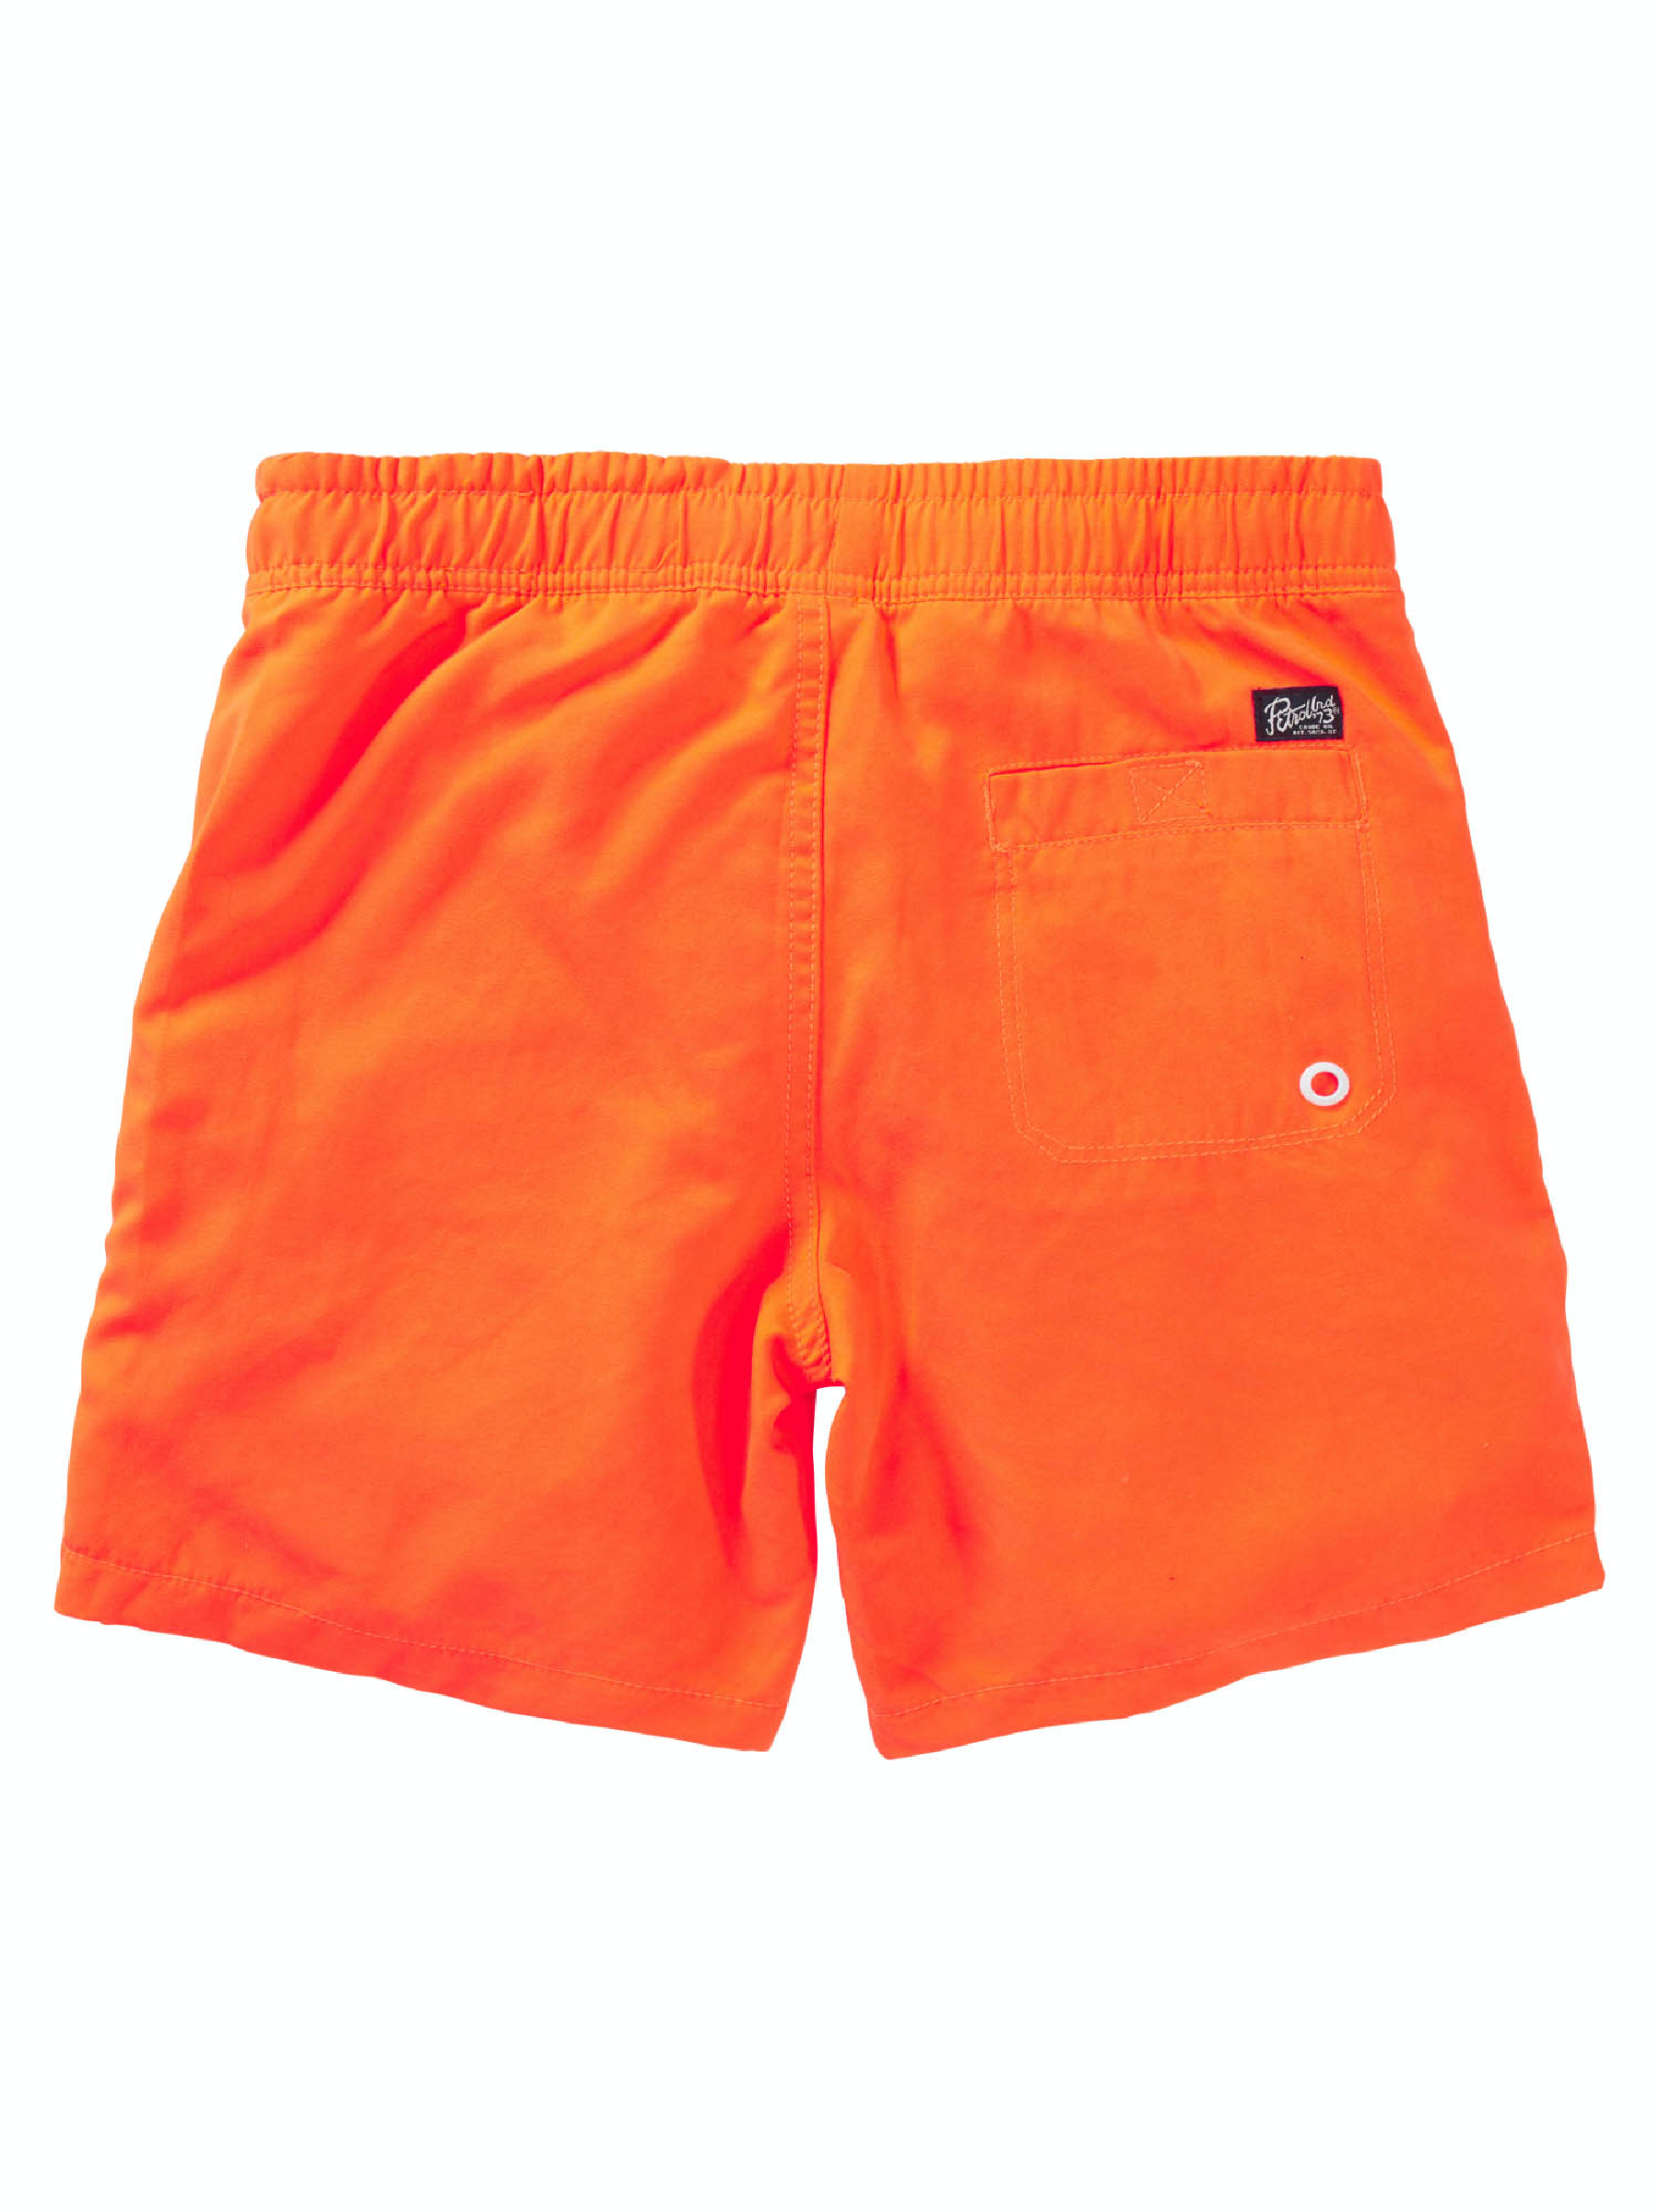 Jongens Zwemshorts fluo van Petrol Ind. in de kleur Shocking Orange in maat 176.